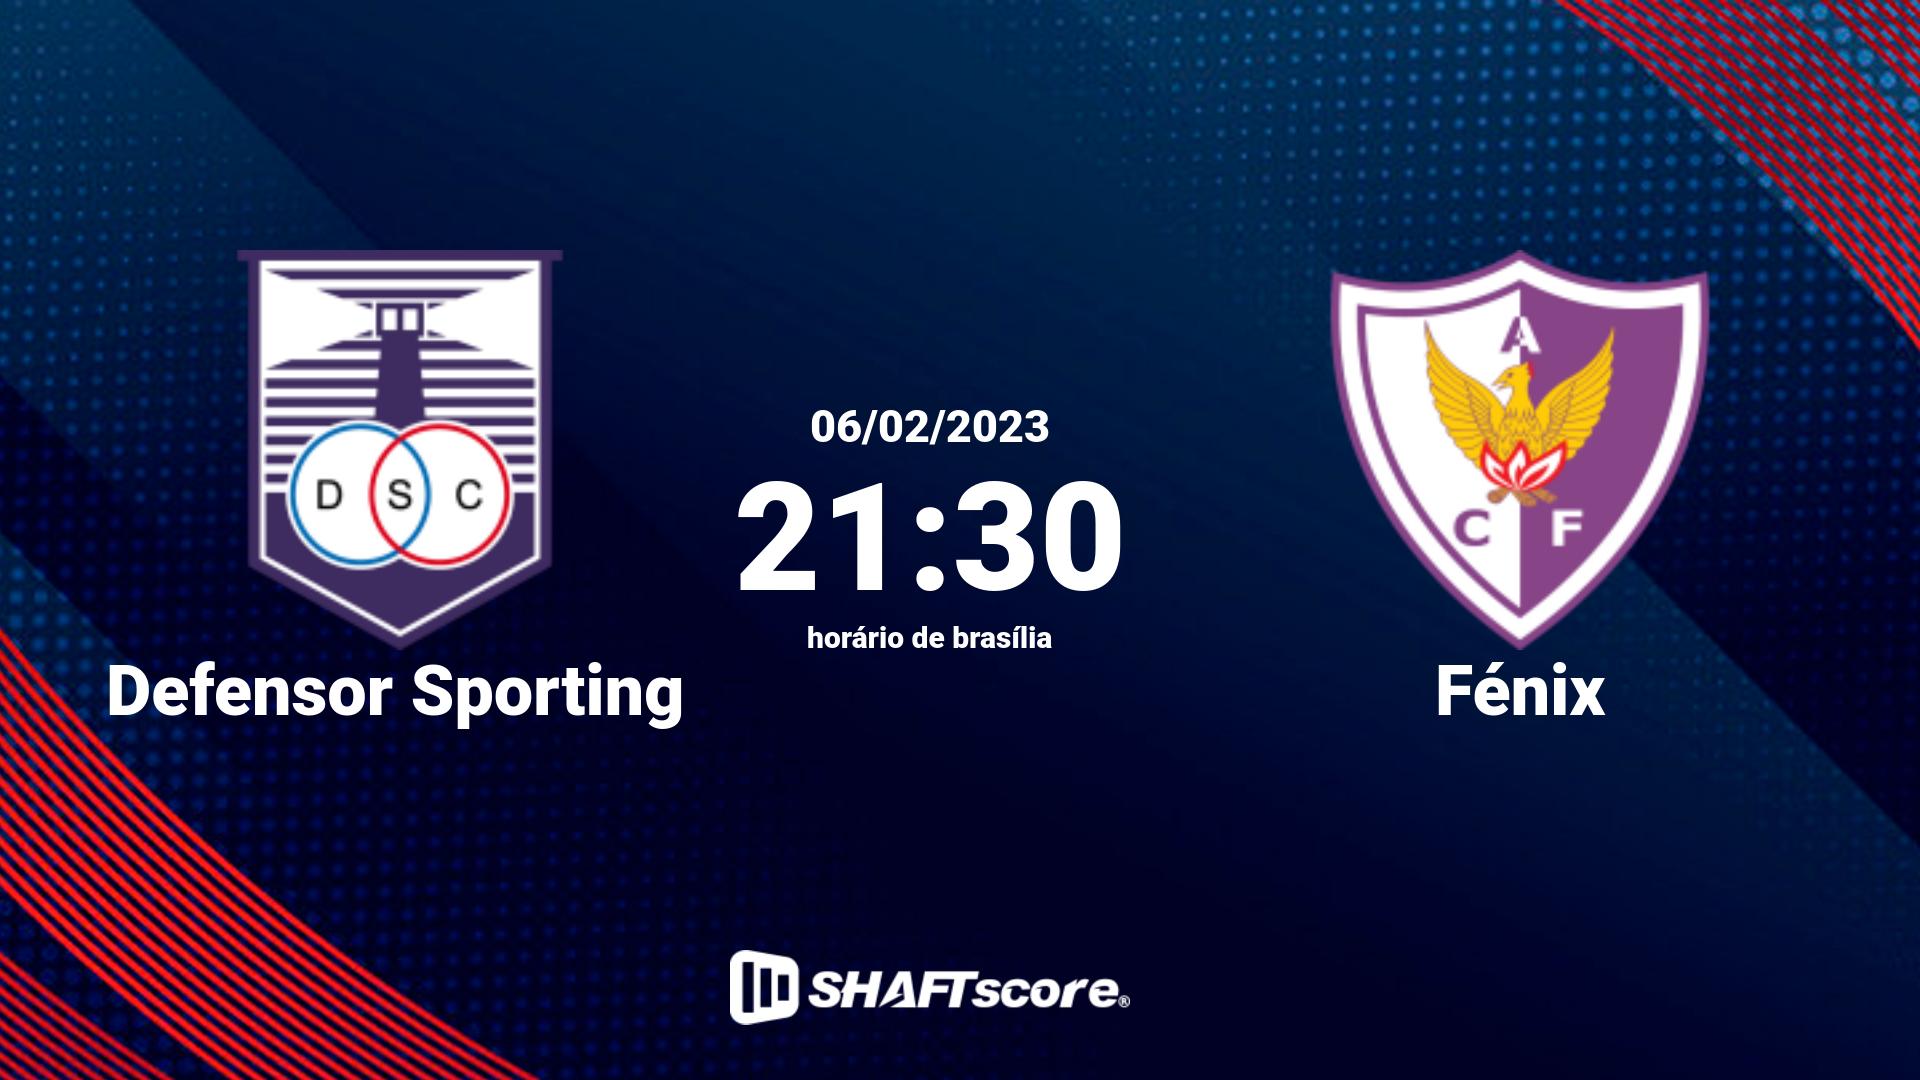 Estatísticas do jogo Defensor Sporting vs Fénix 06.02 21:30